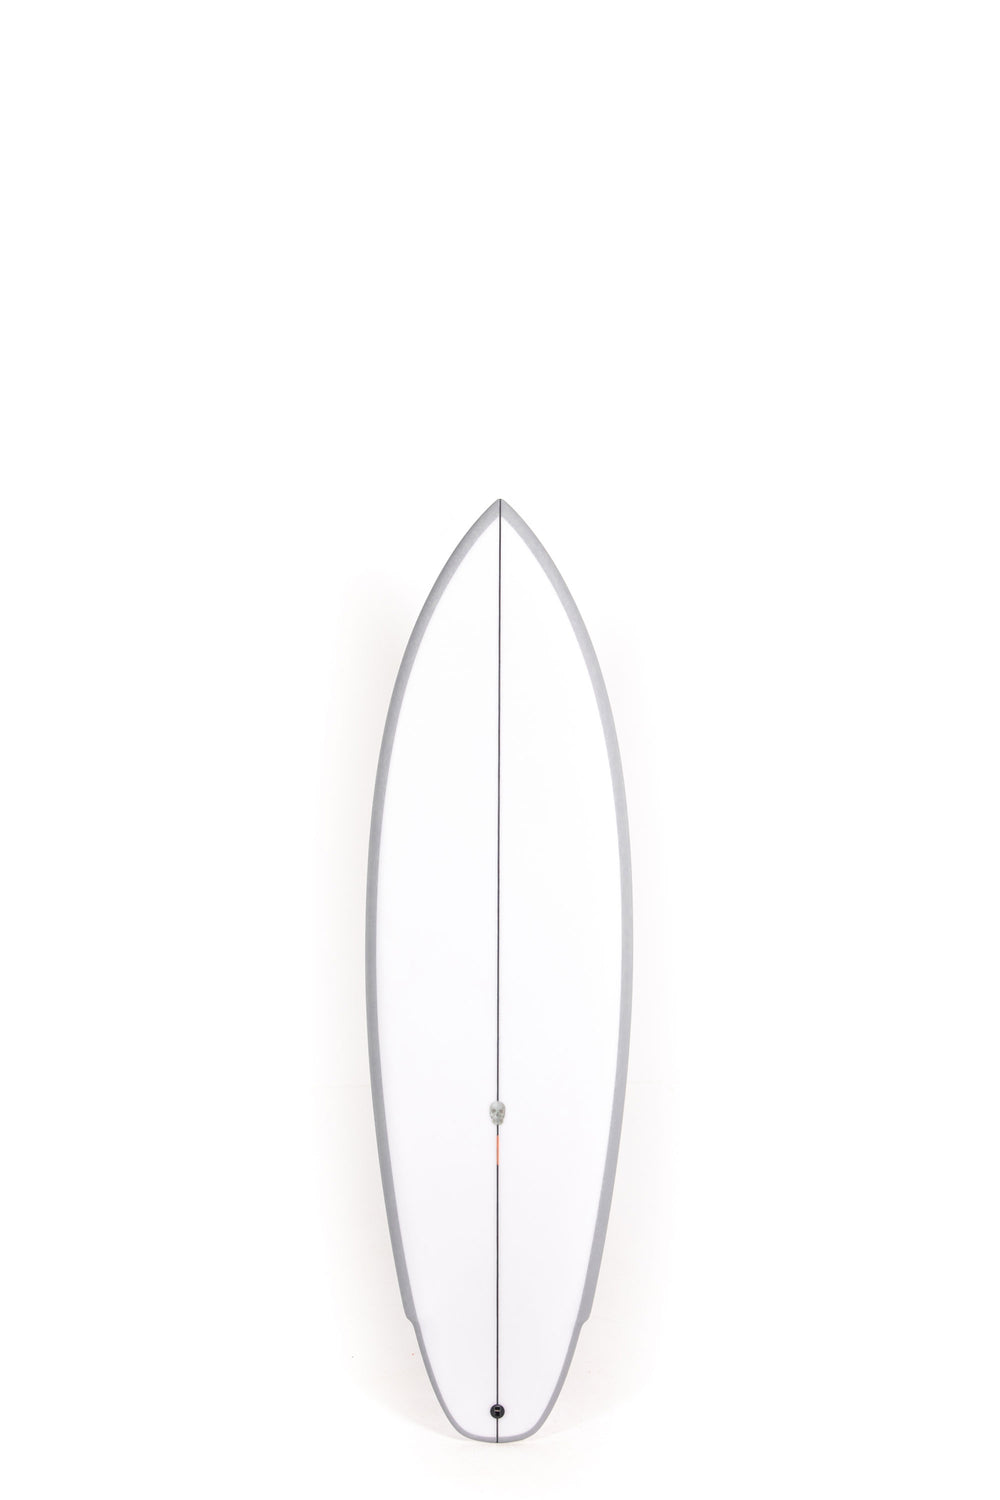 Christenson Surfboards - LANE SPLITTER - 5'9